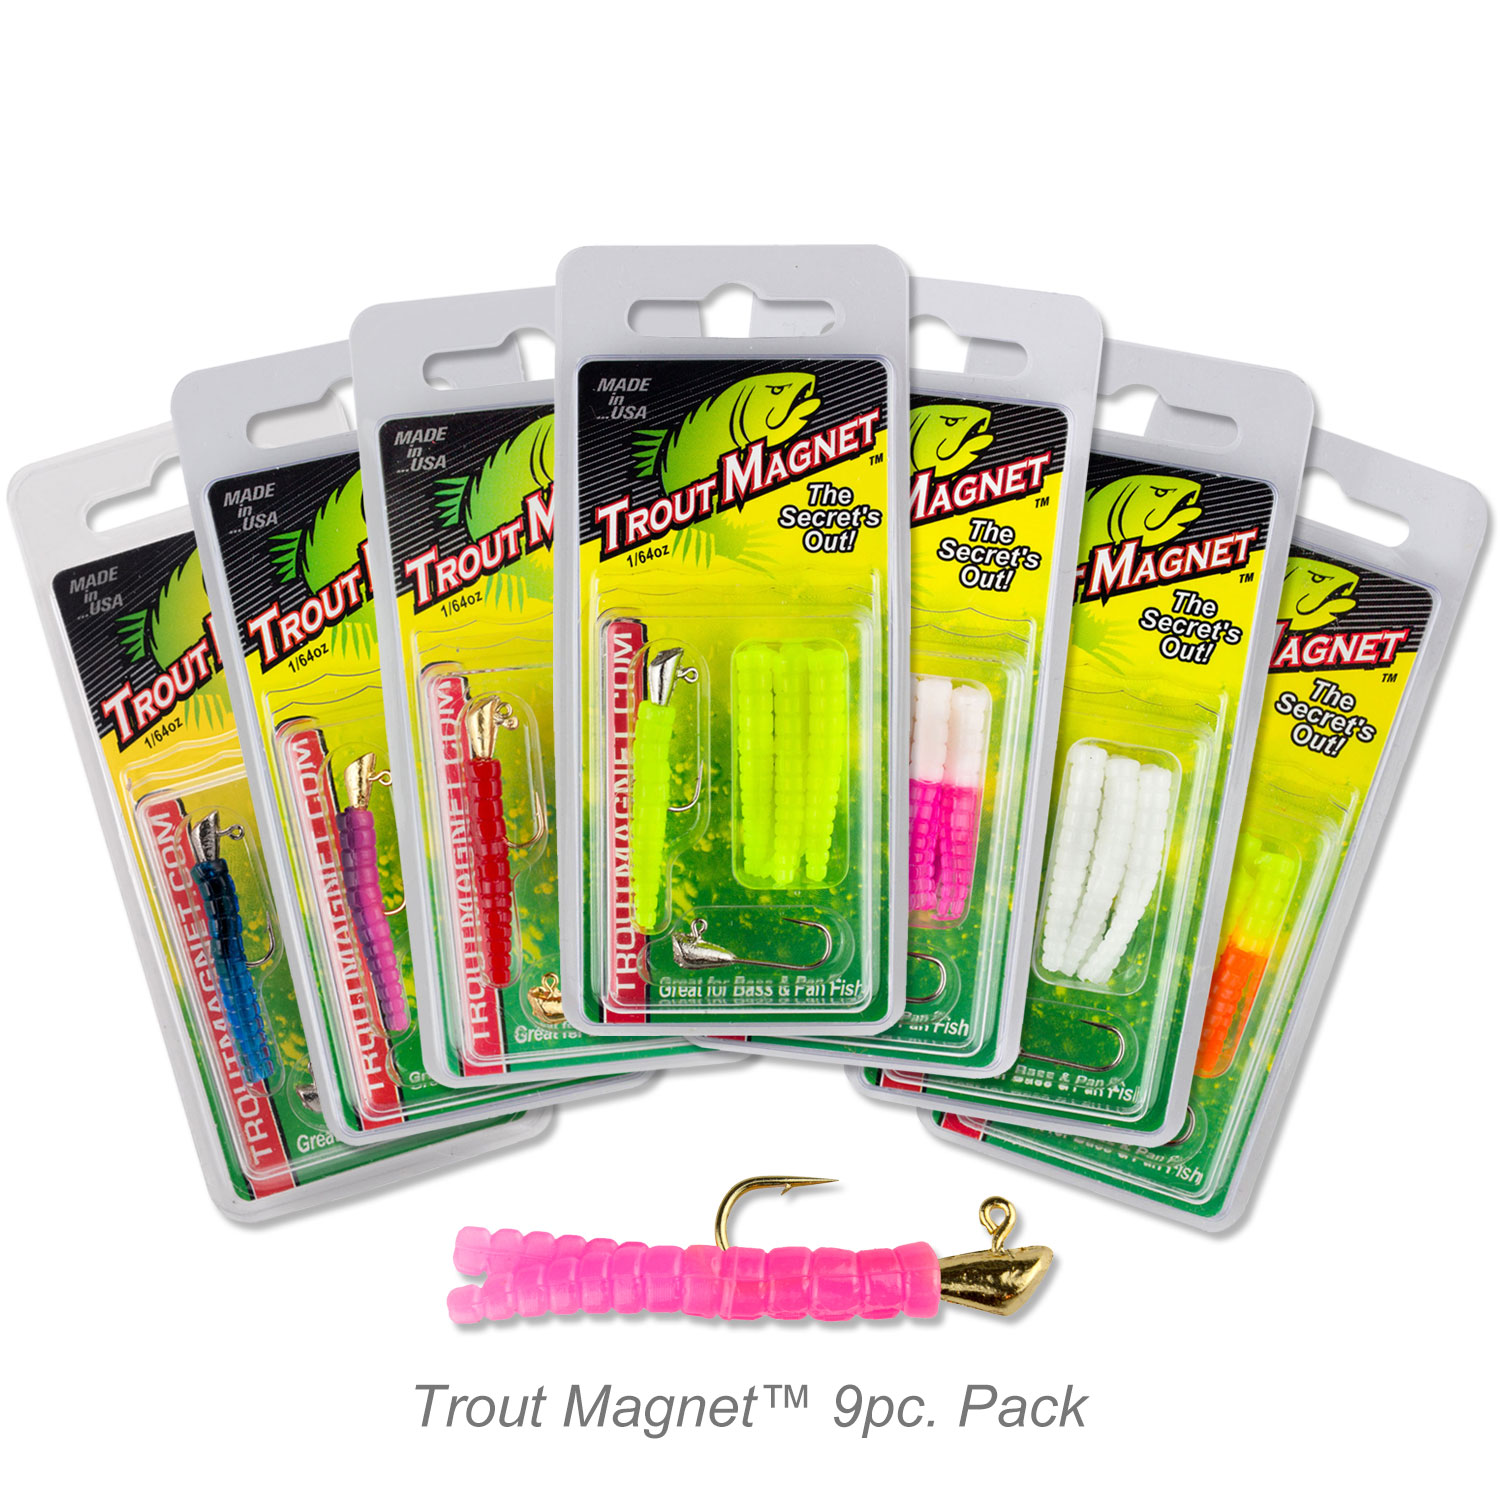 Trout Magnet 9 pc. Packs - TROUT MAGNET